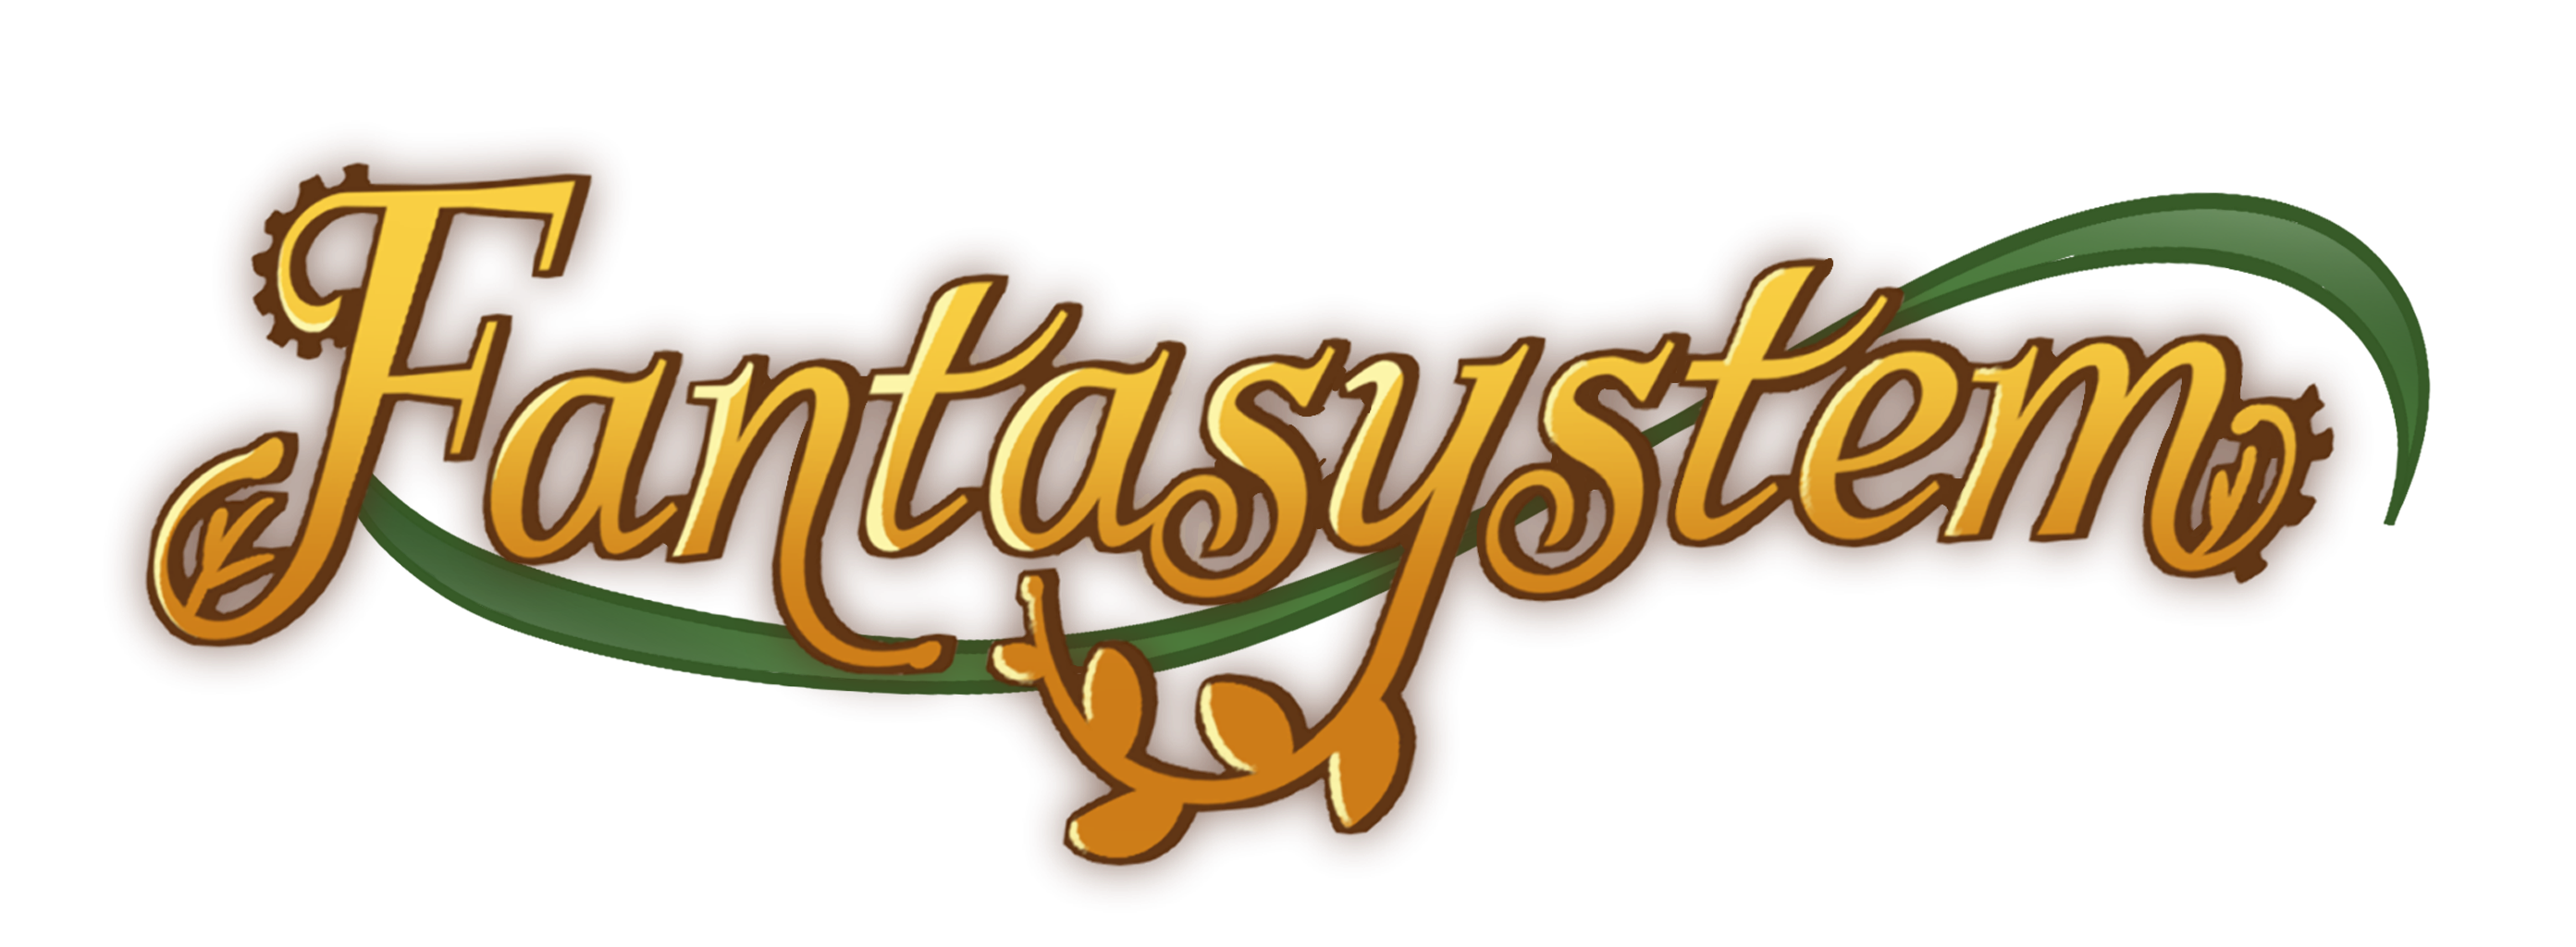 Fantasystem